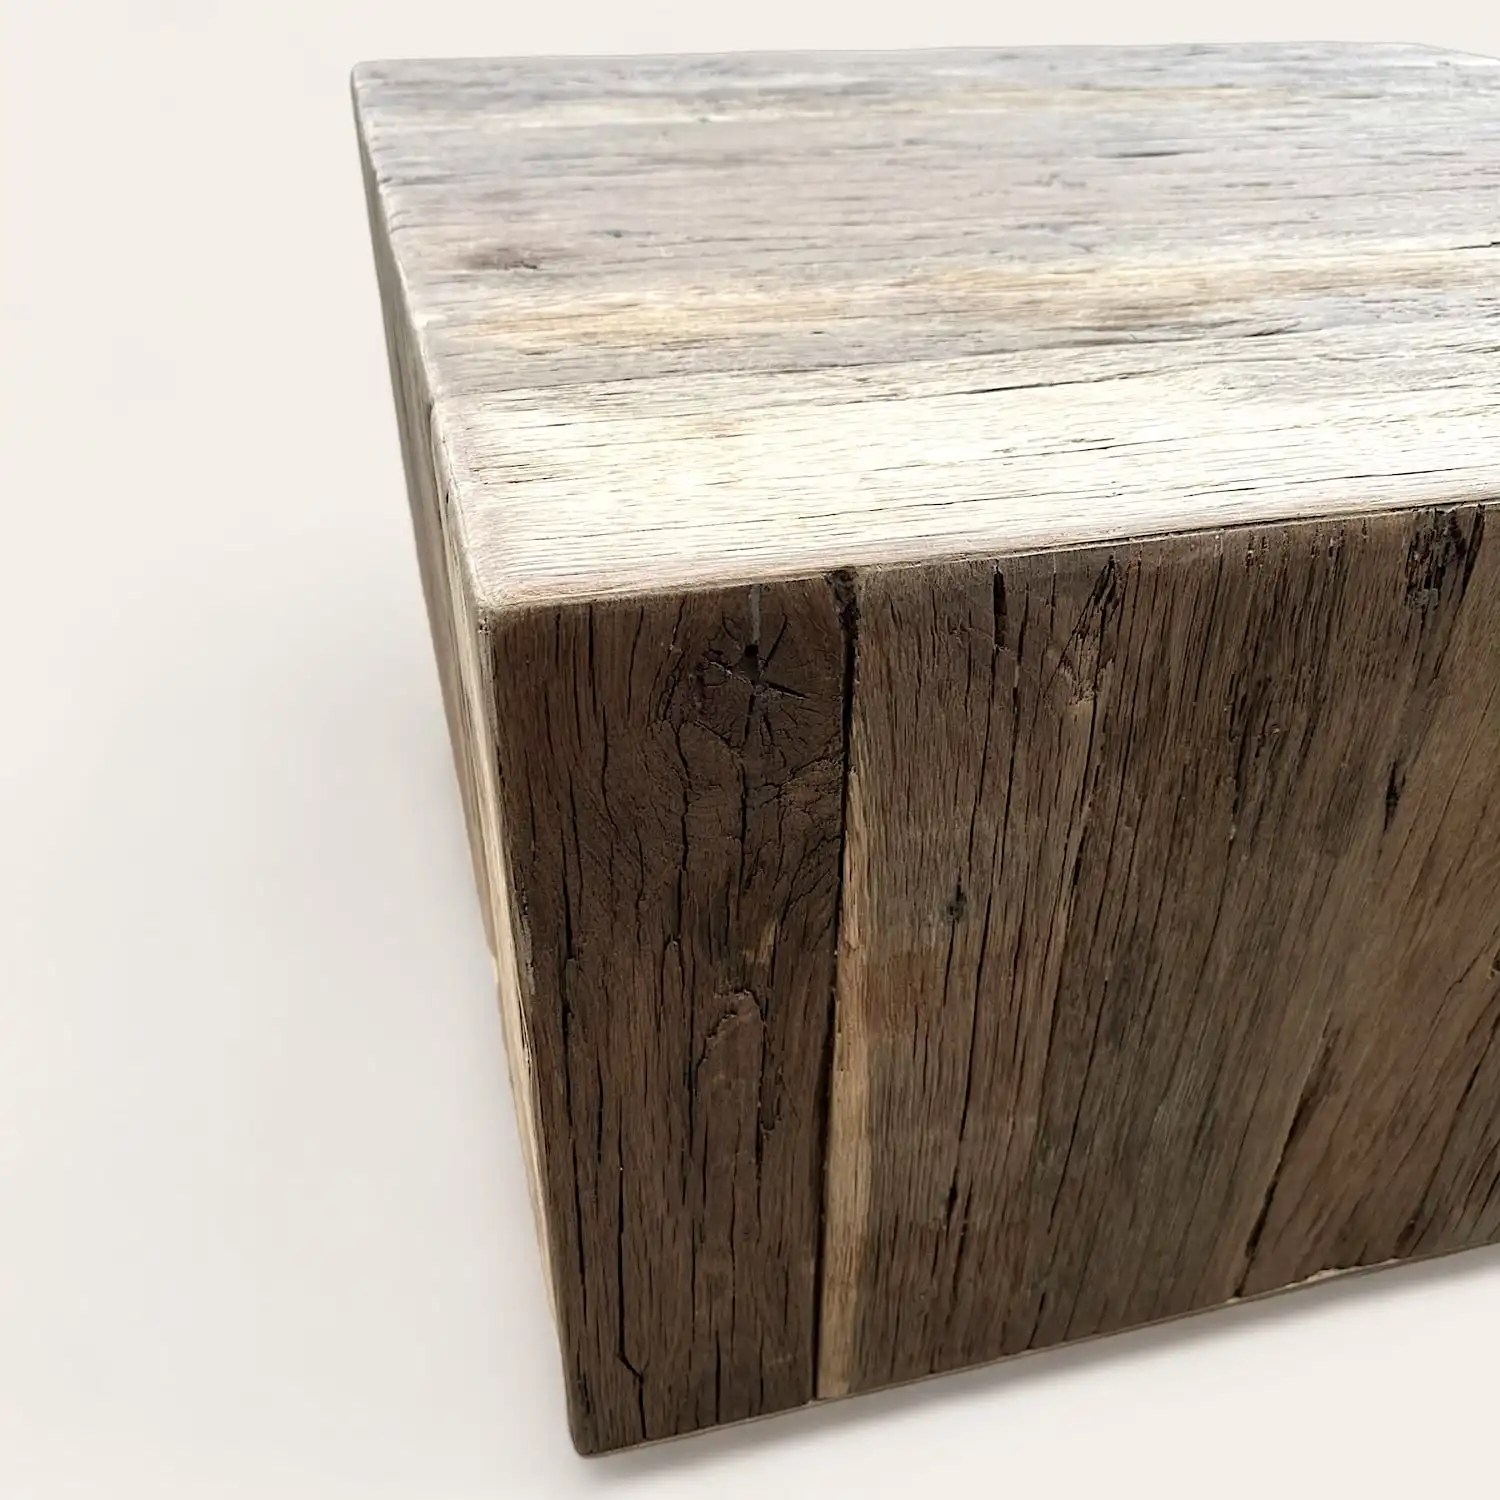  Table basse rustique cube en bois sur fond blanc. 